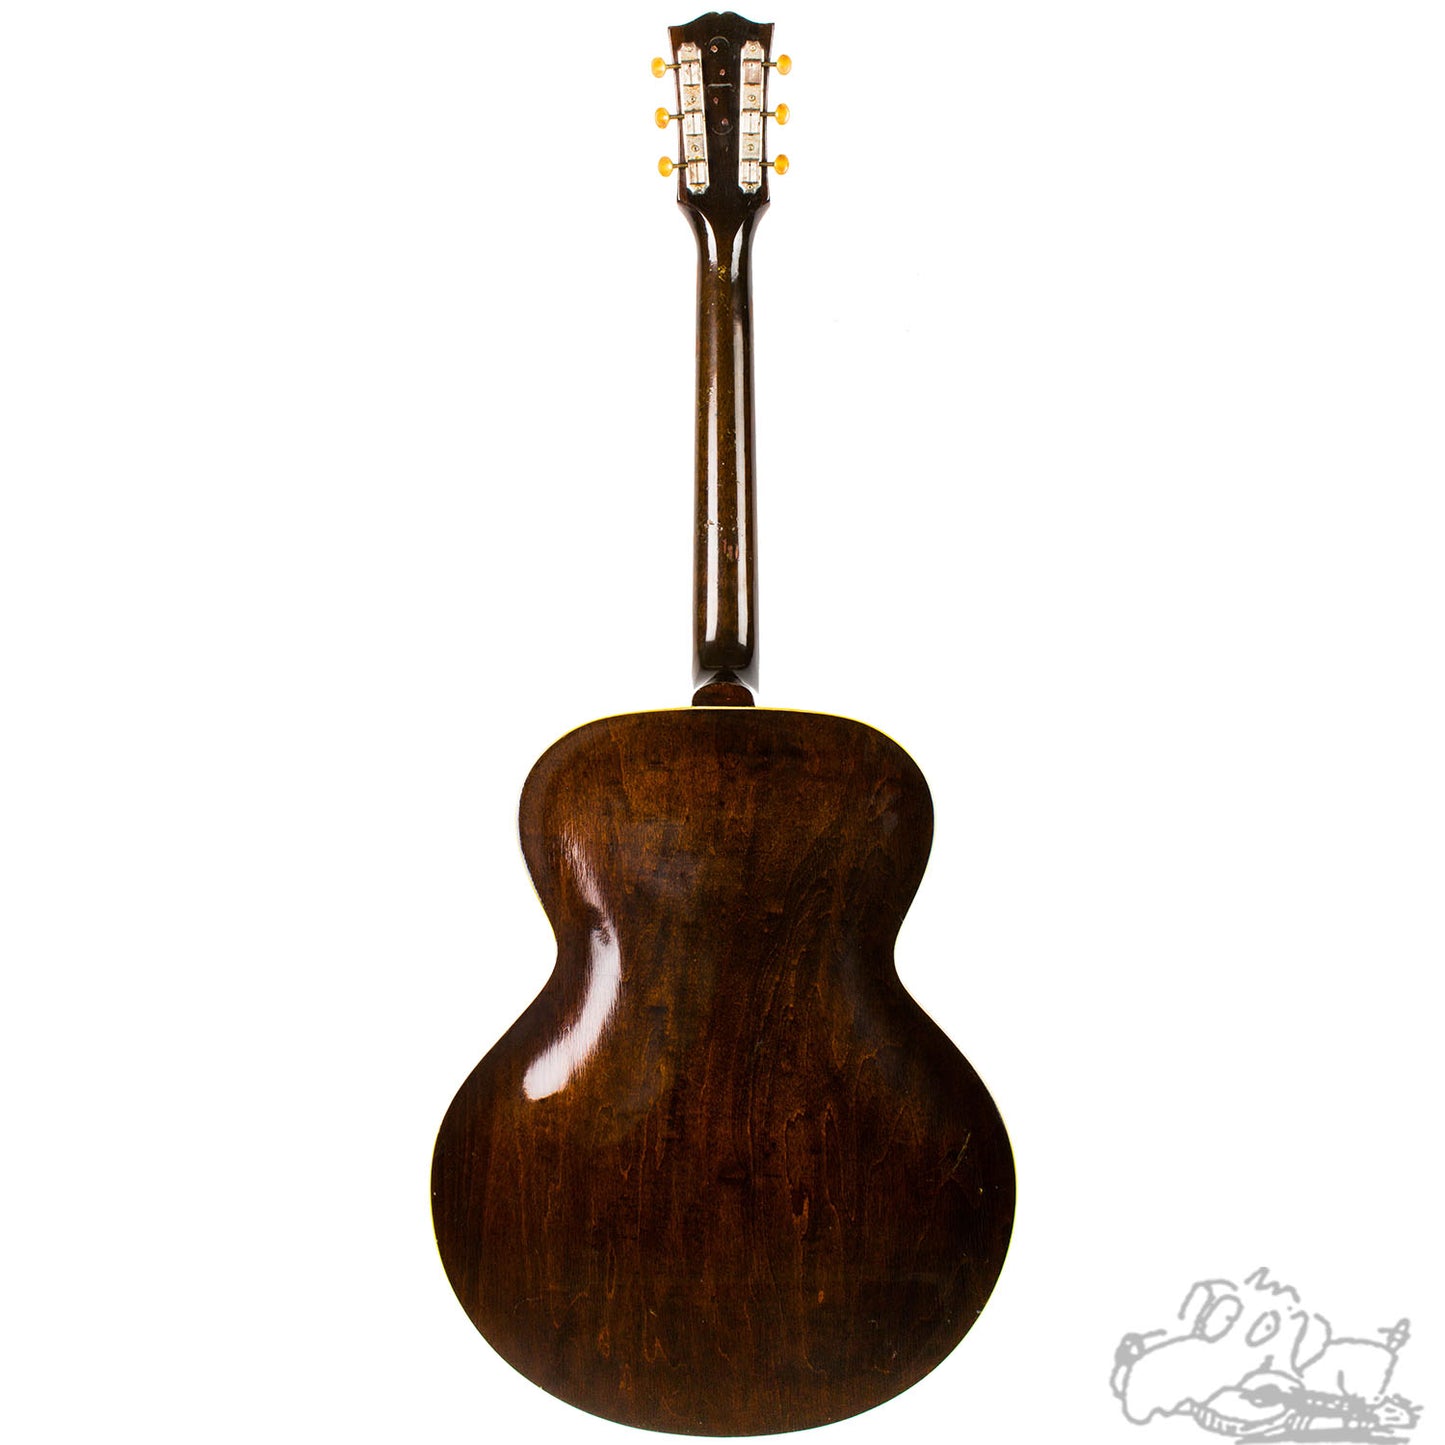 1952 Gibson ES-125 "Monroe Cook"